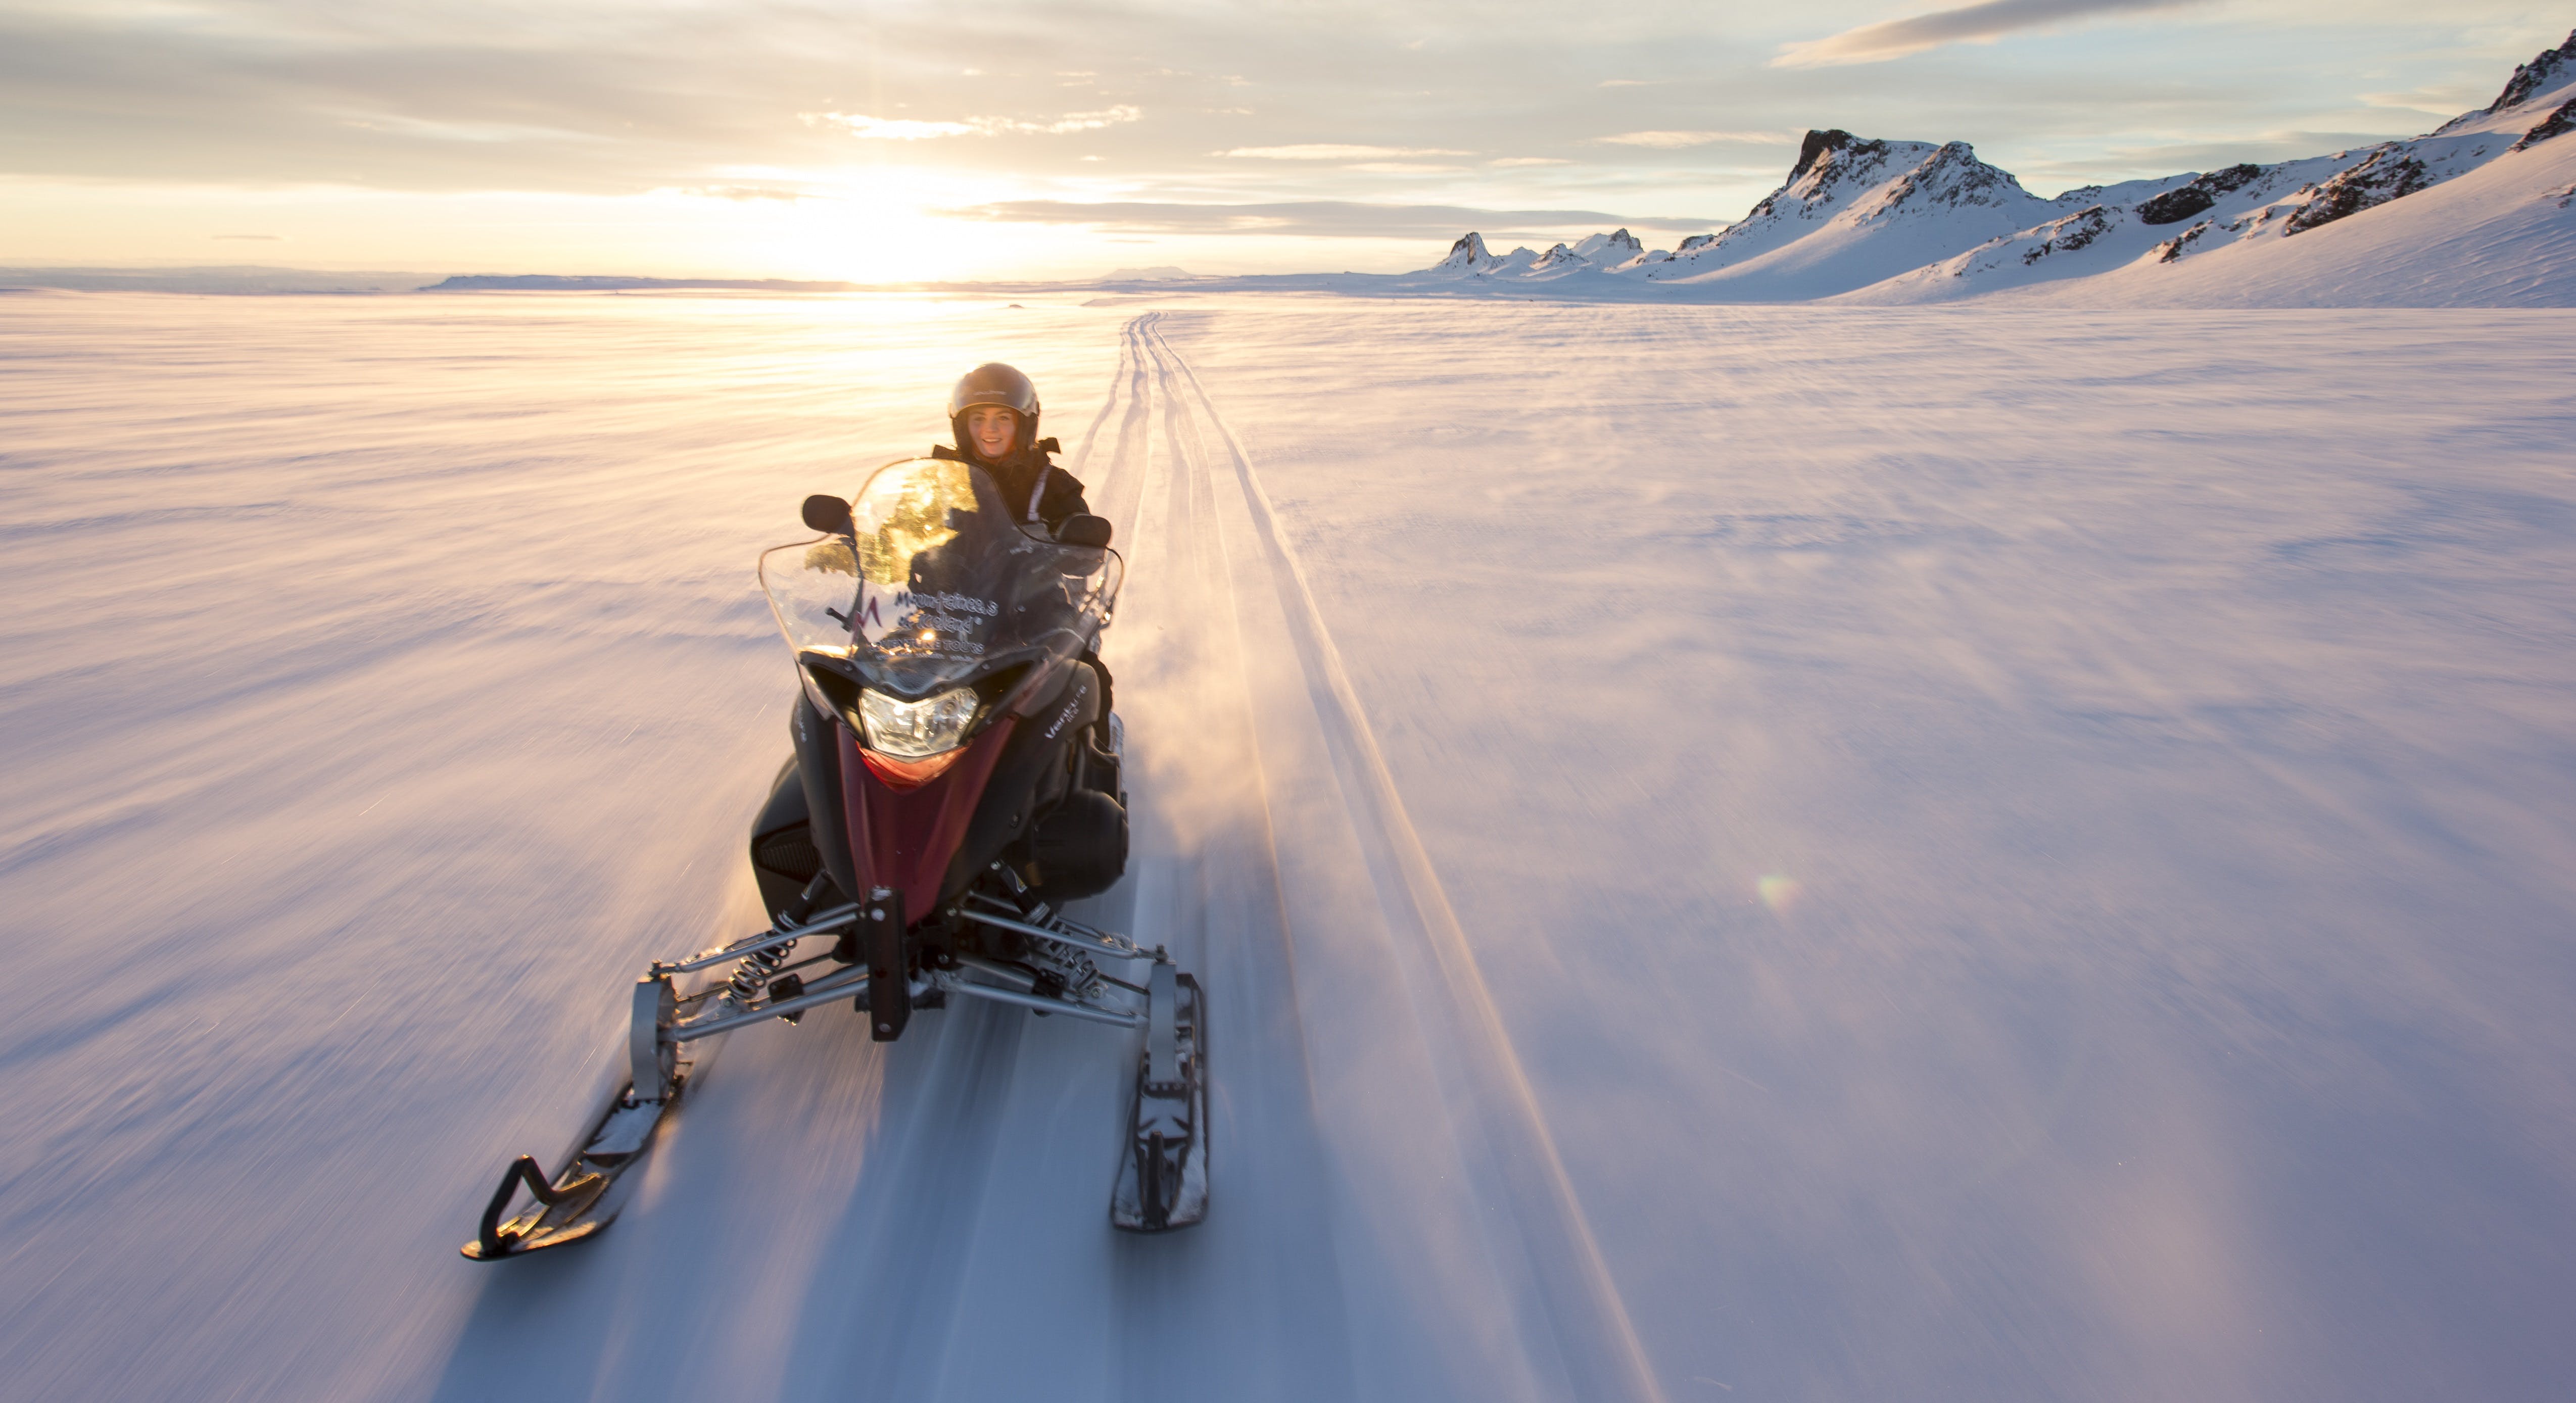 La motoneige est l'une des activités les plus excitantes disponibles en Islande.